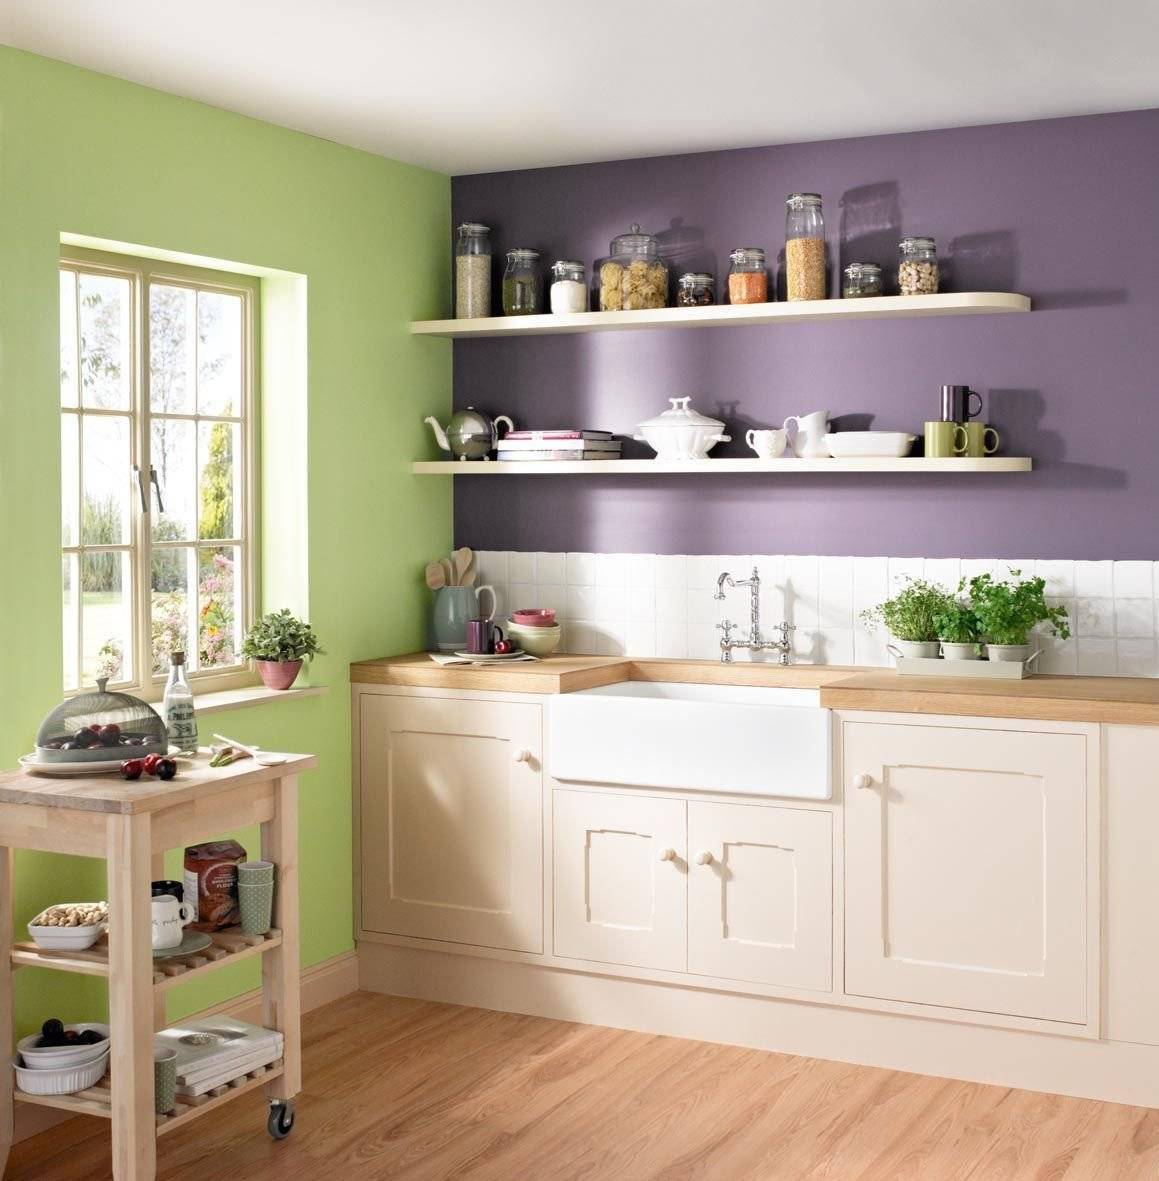 Краска для стен в кухни: какую лучше выбрать для покраски